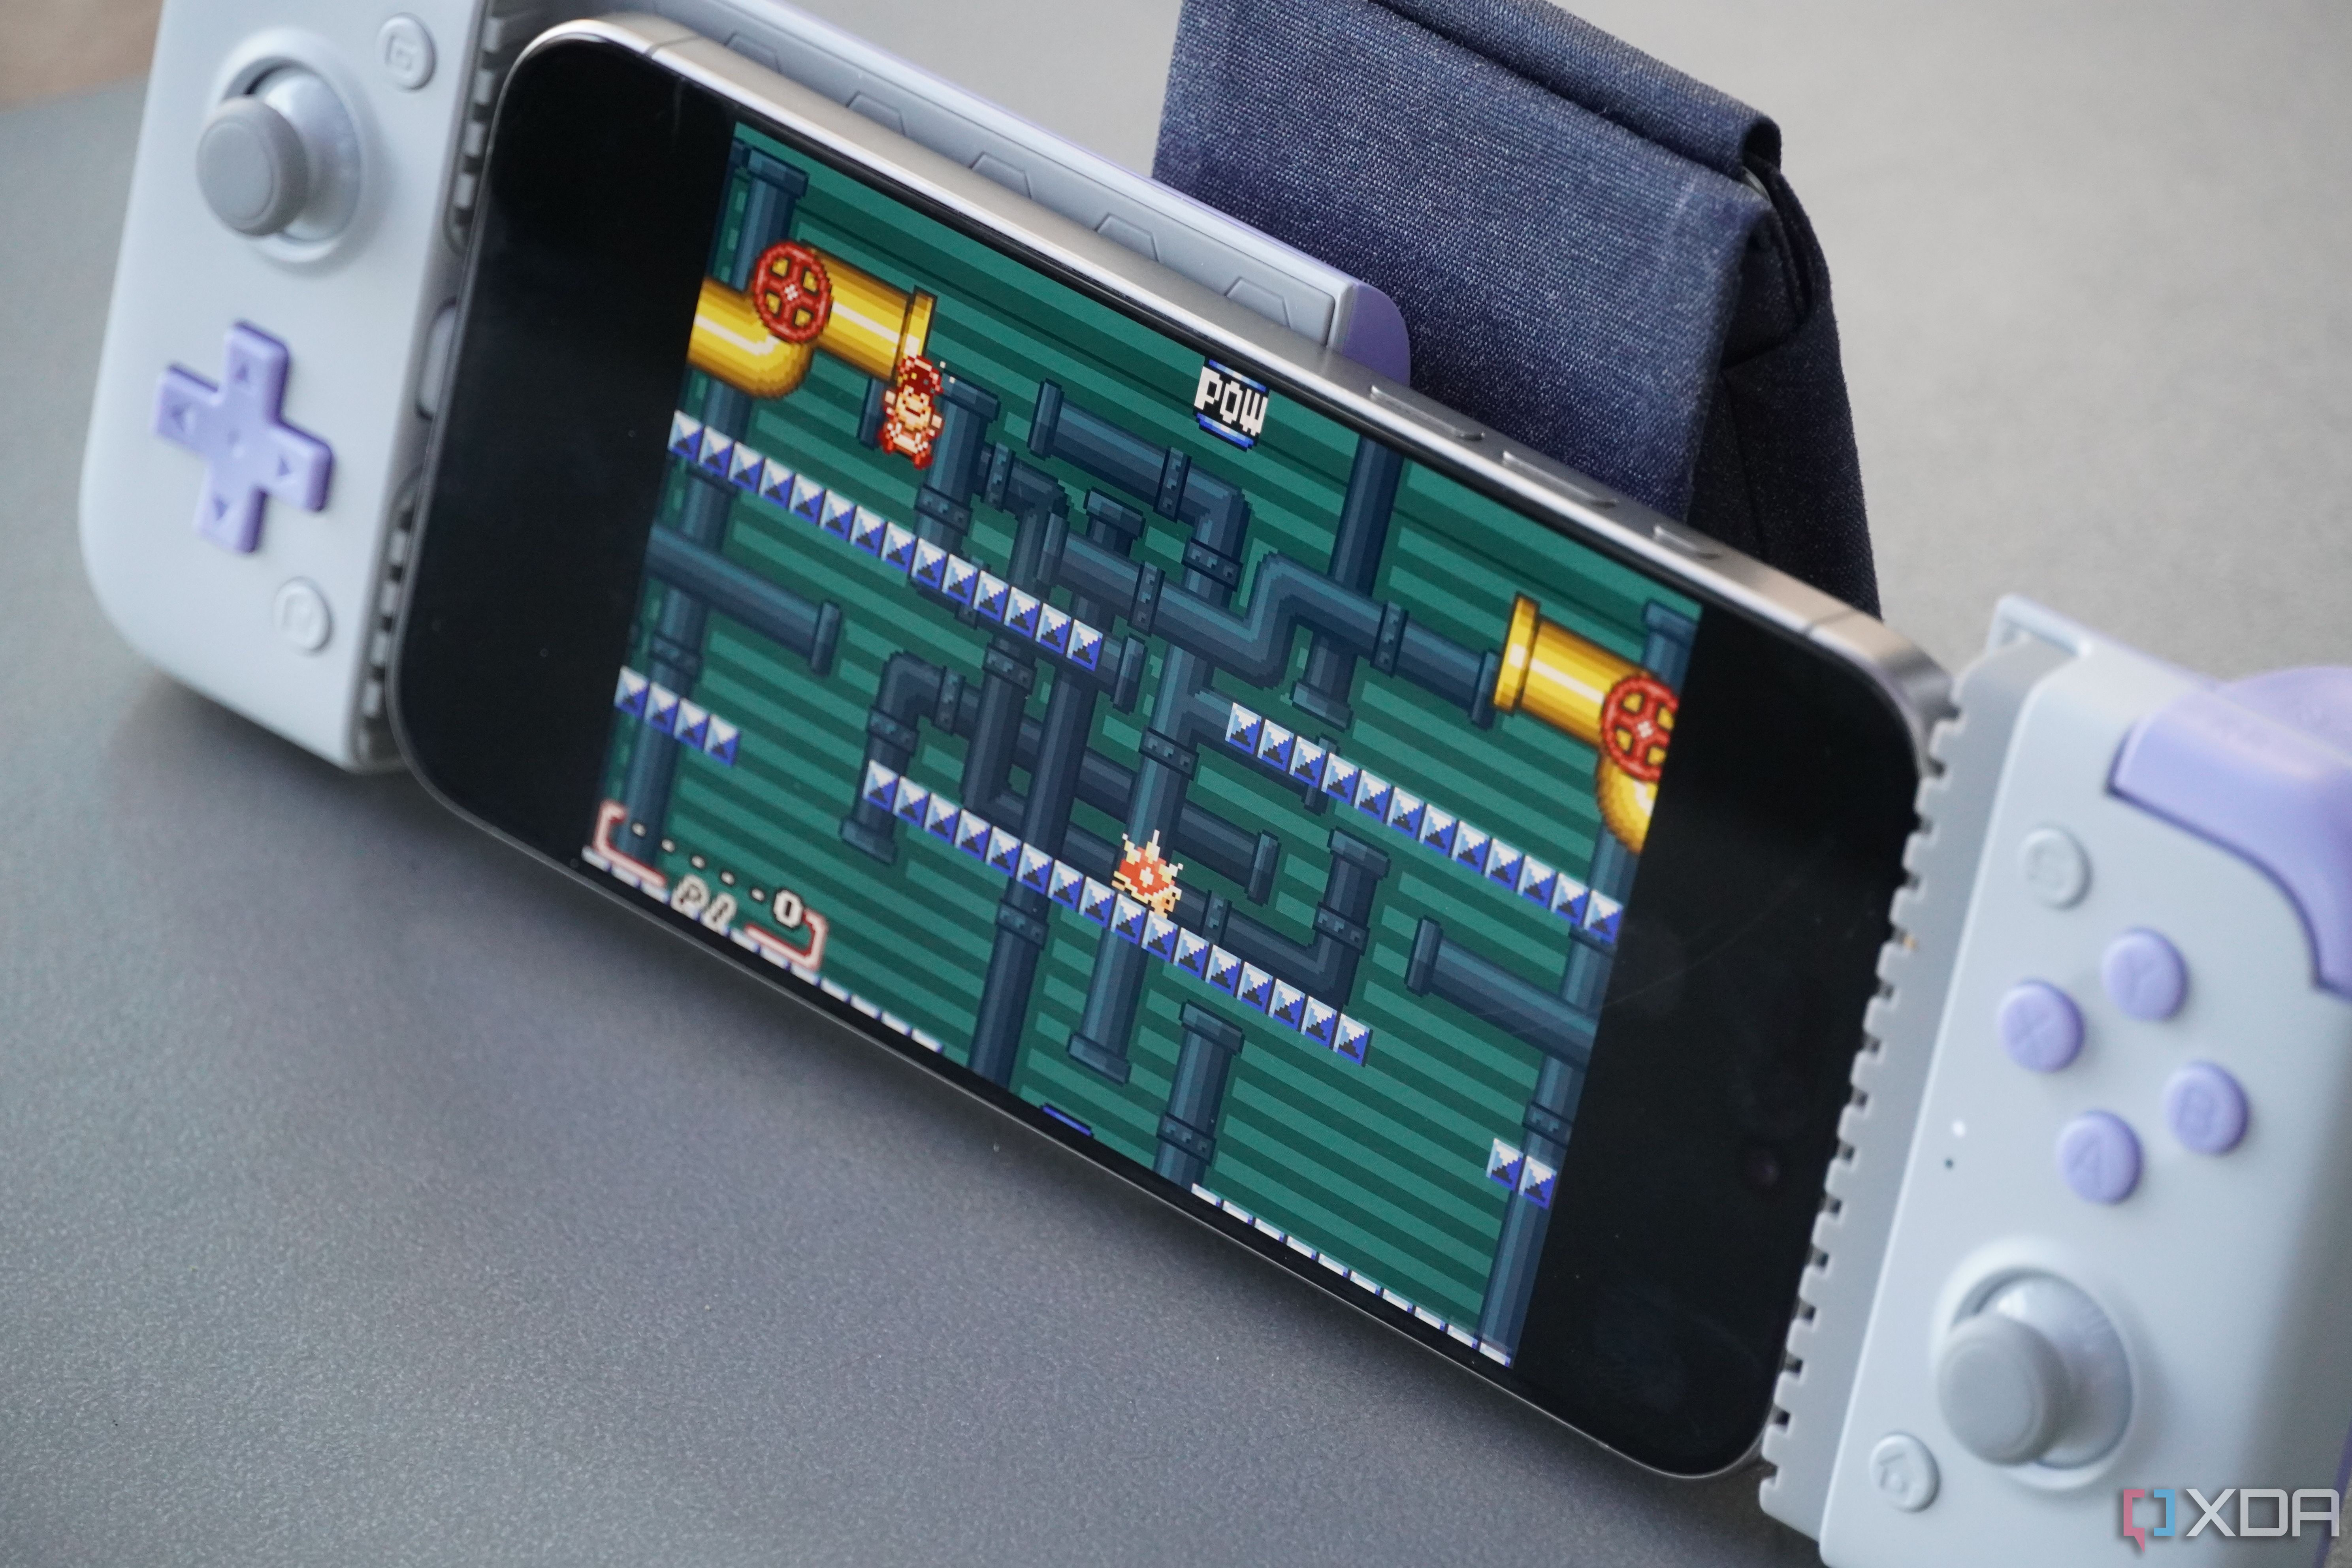 Ан iPhone запуск Марио на эмуляторе Delta.